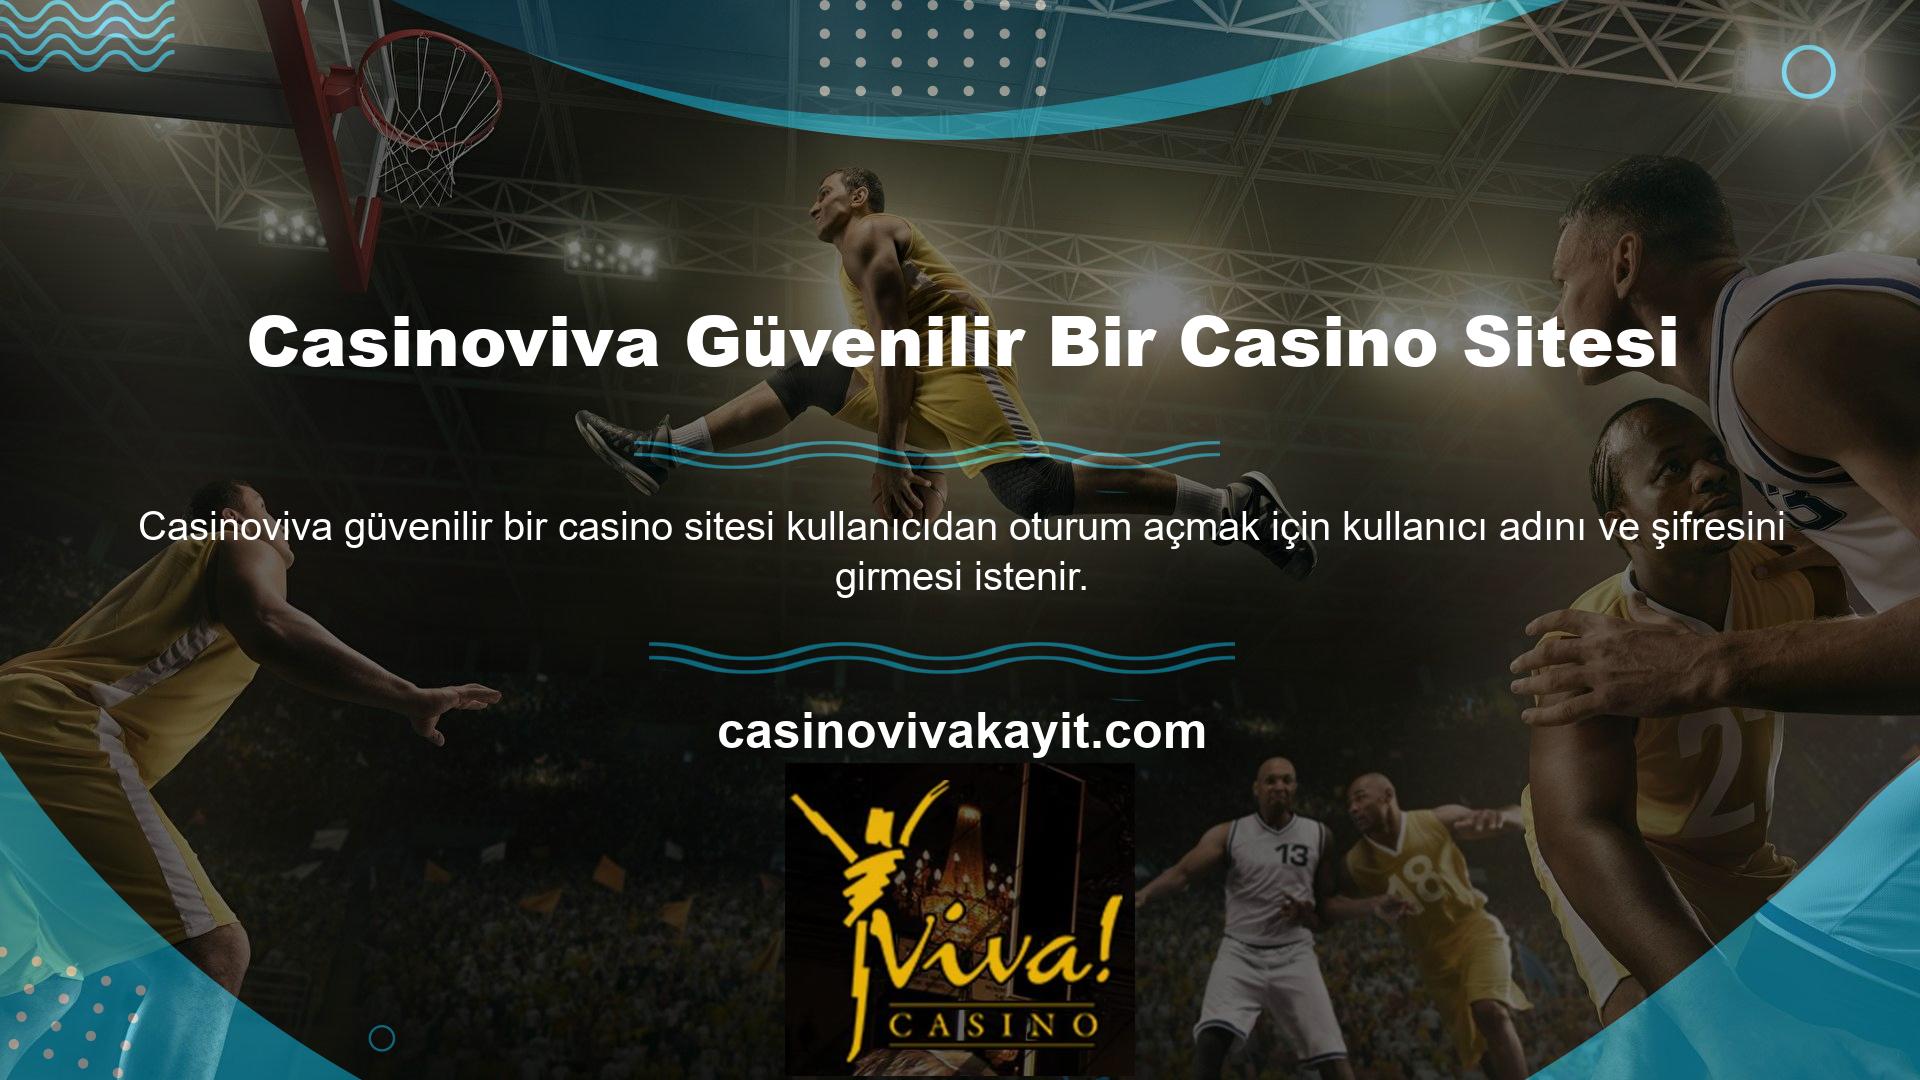 Casinoviva Canlı Casino bölümü Black Jack, Rulet ve Bakara dahil en karlı casino oyunlarını içerir